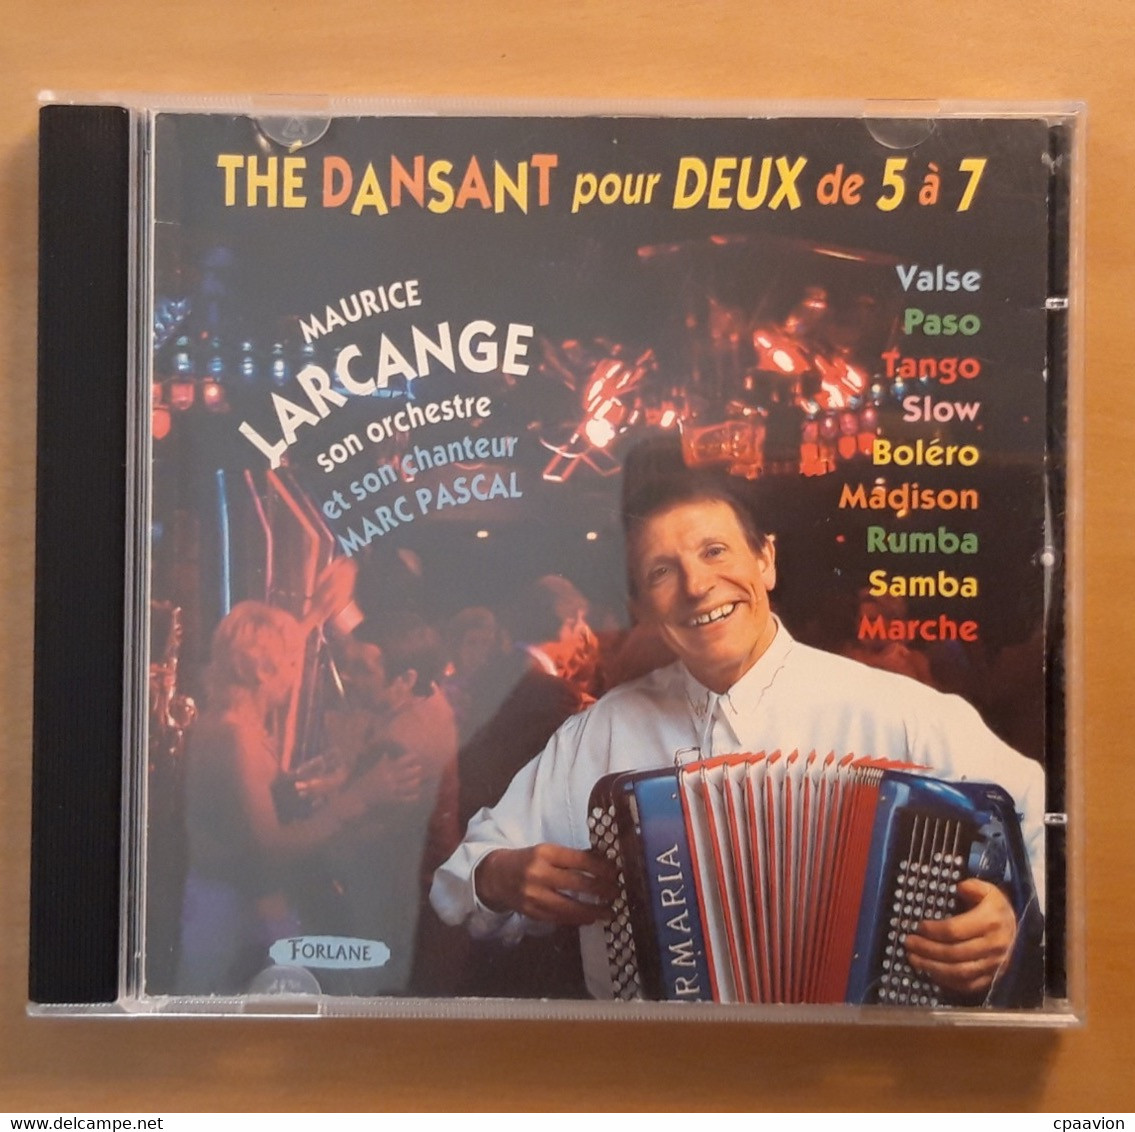 MAURICE LARCANGE; THE DANSANT POUR DEUX DE 5 À 7 - Instrumental